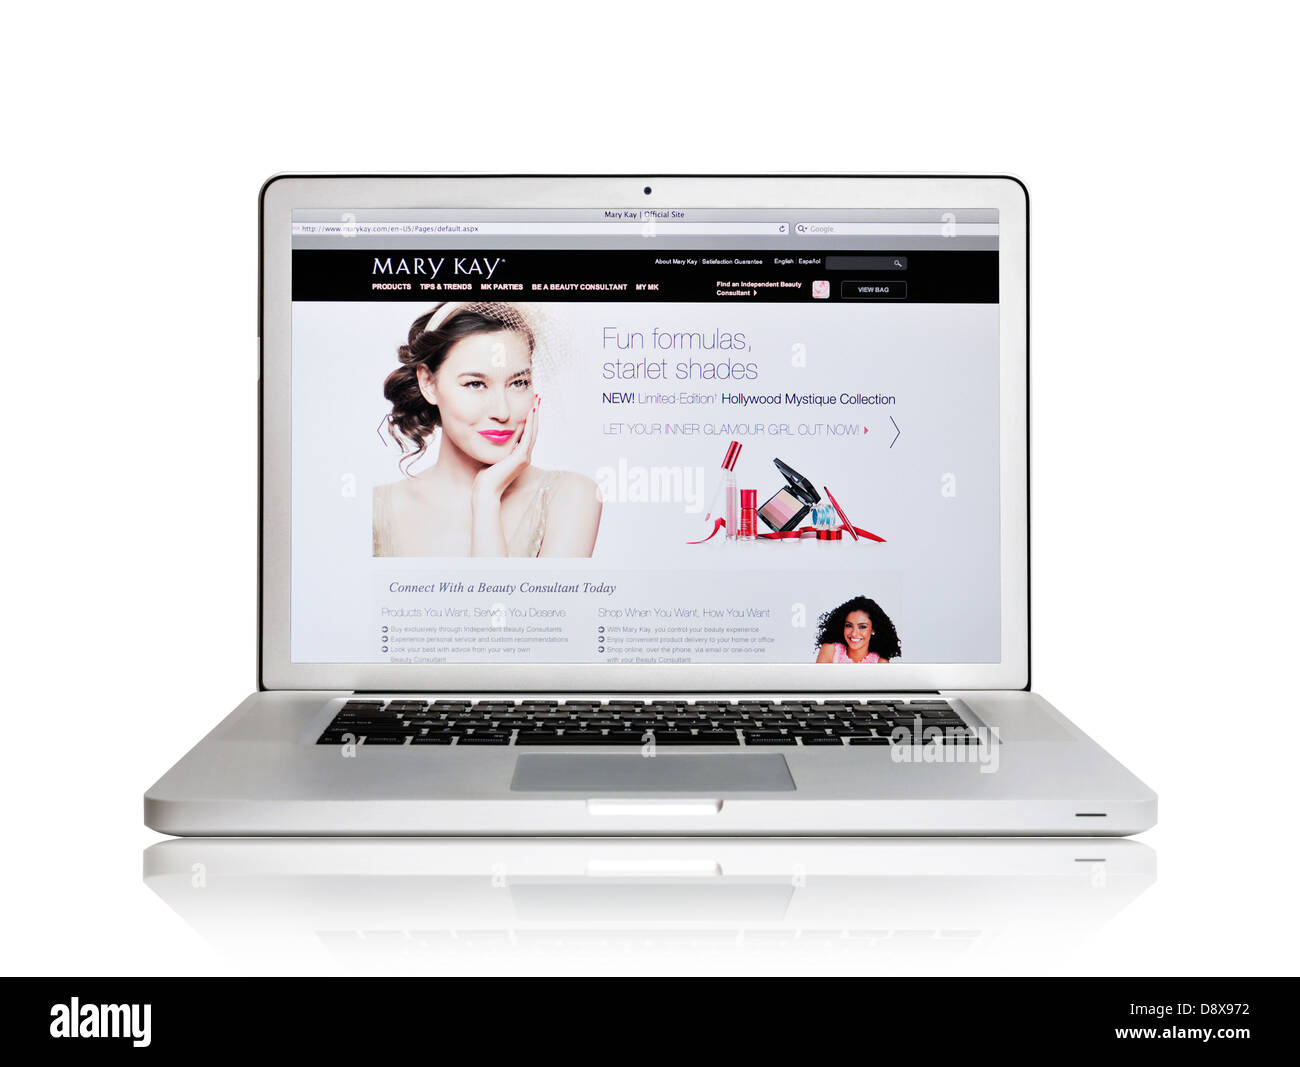 Laptop-Bildschirm zeigt Mary Kay Website - Hautpflege und Make-up Unternehmen Stockfoto